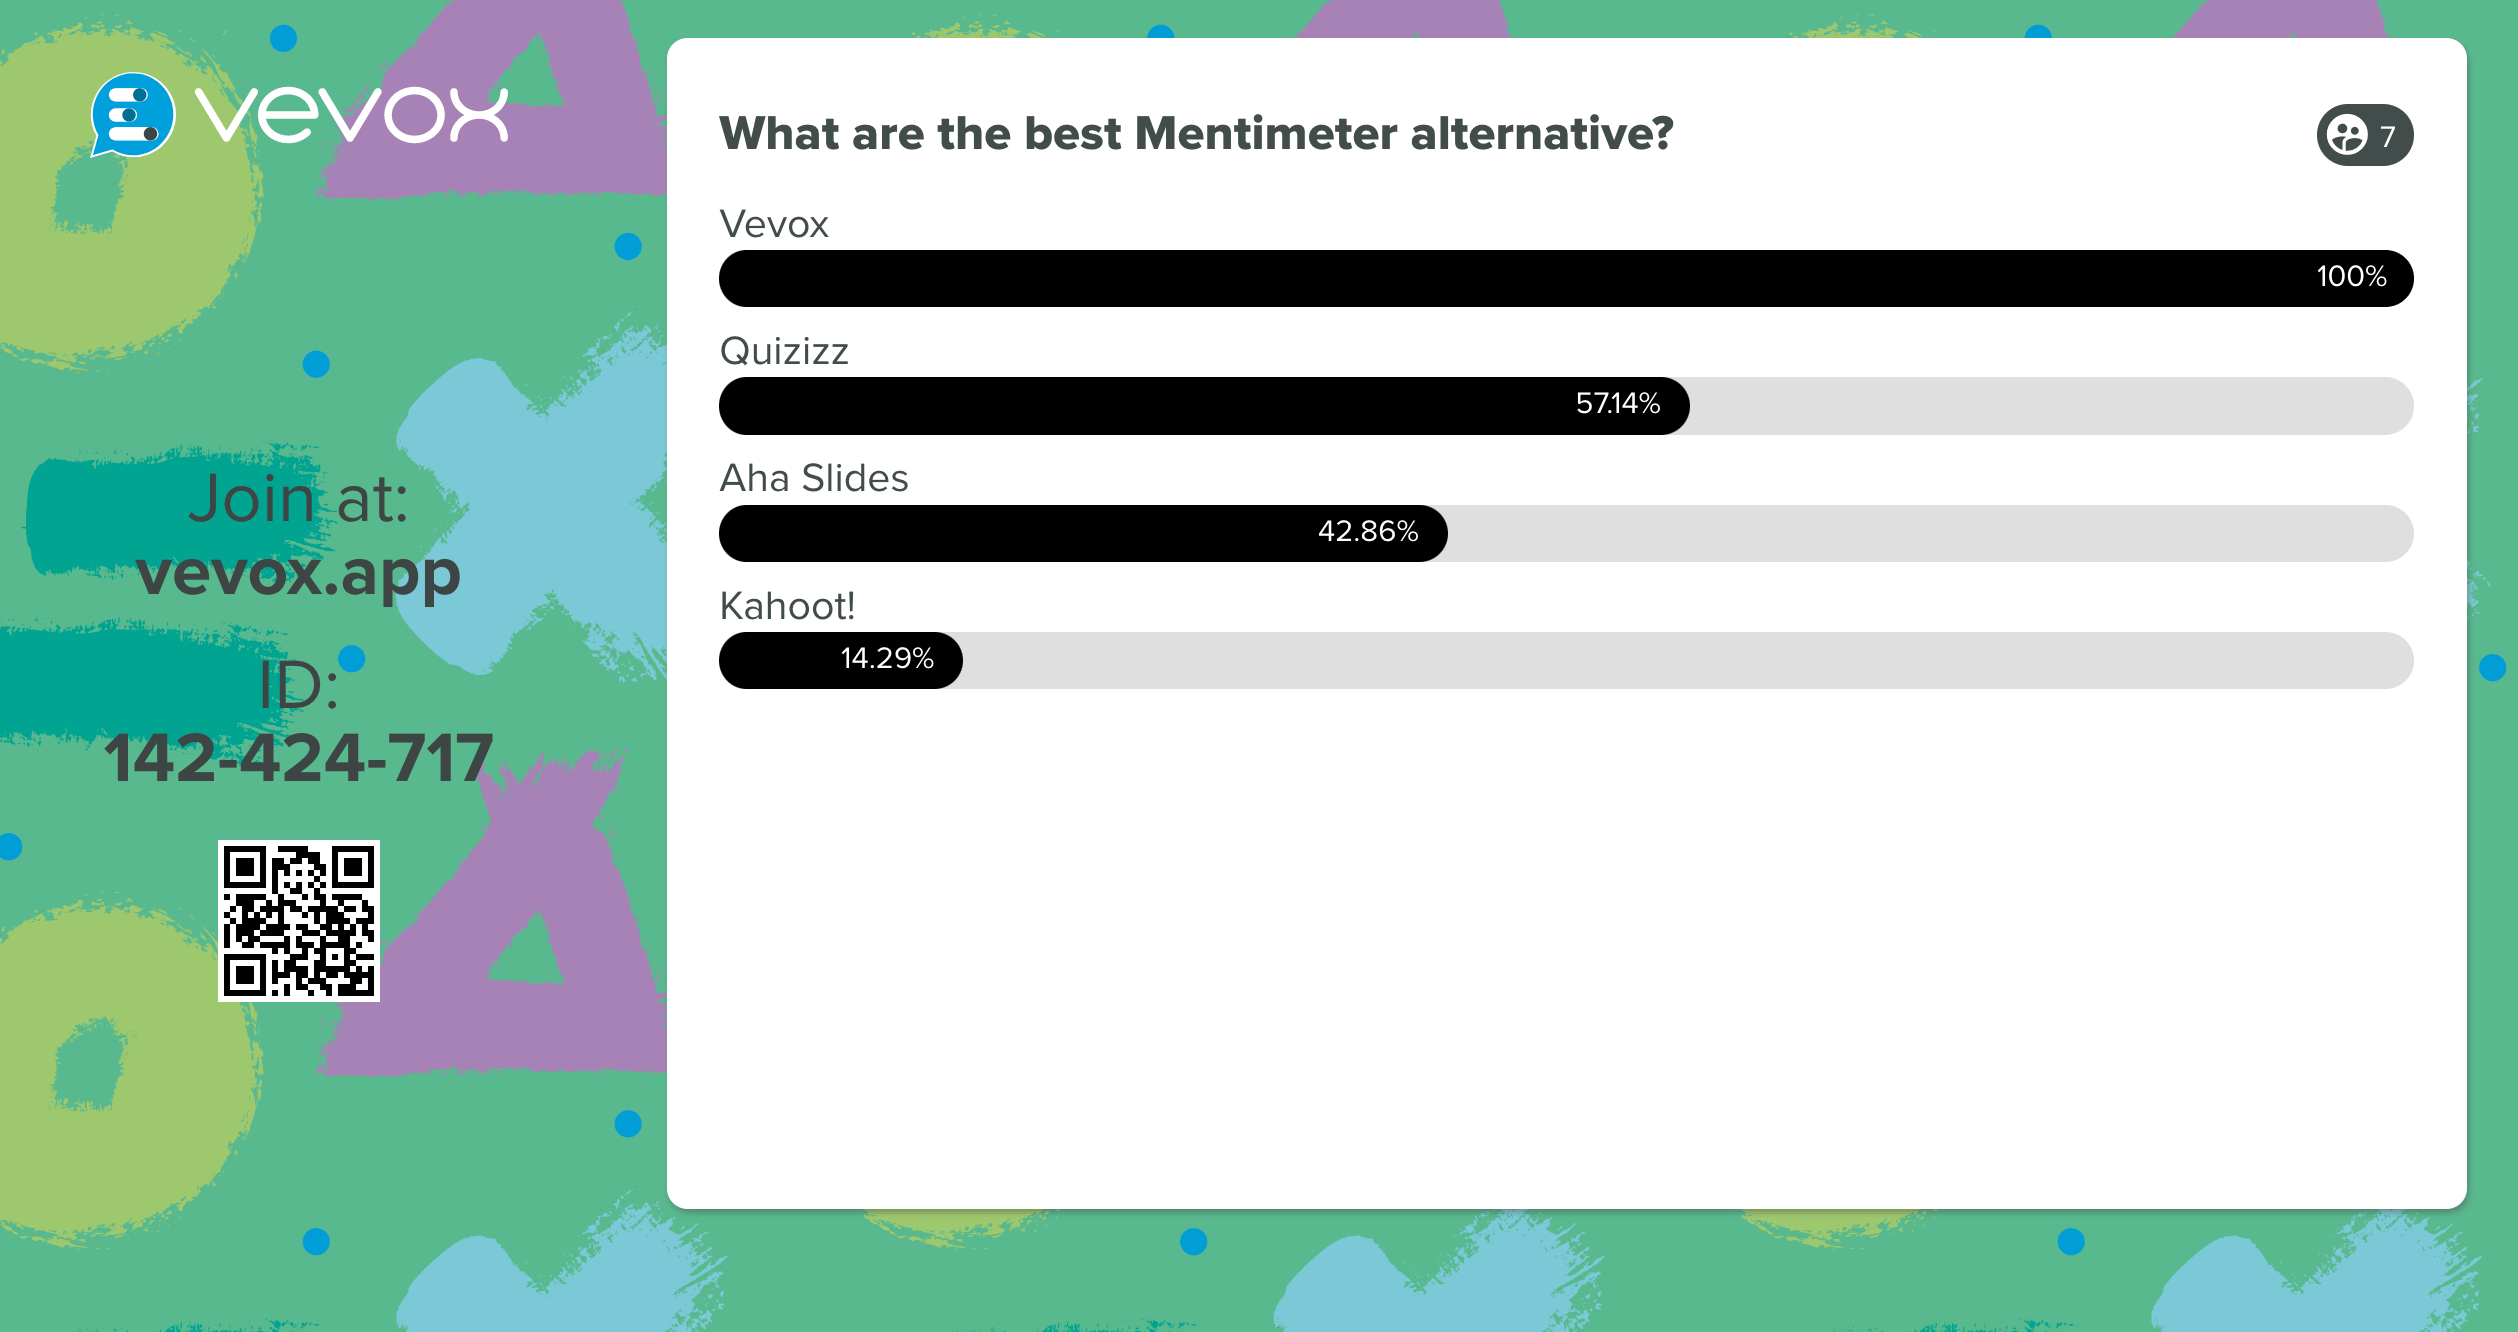 4 of the best Mentimeter alternatives